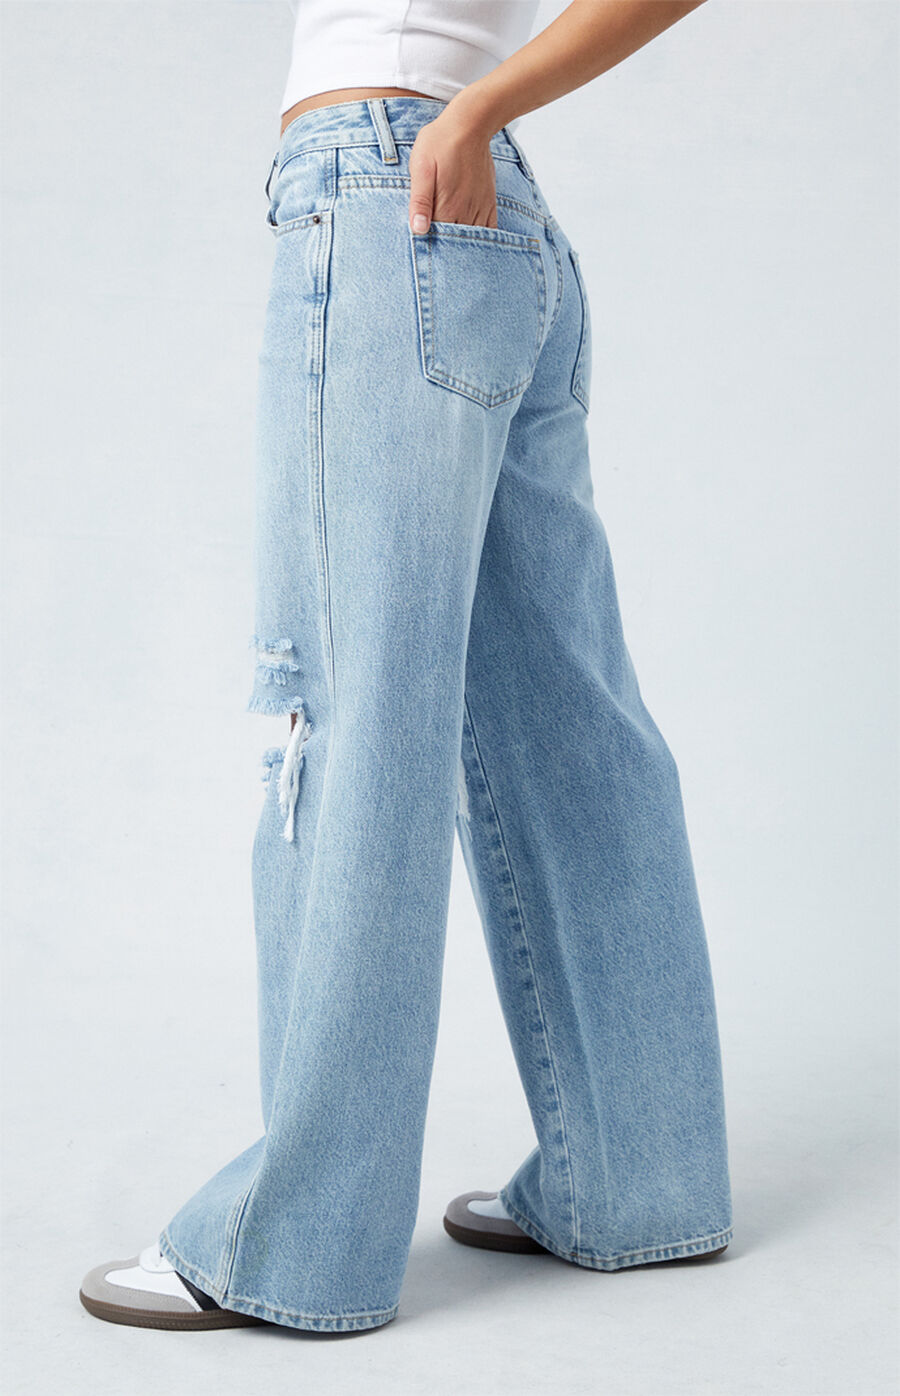 PacSun Medium Blue Low Rise Baggy Jeans | PacSun